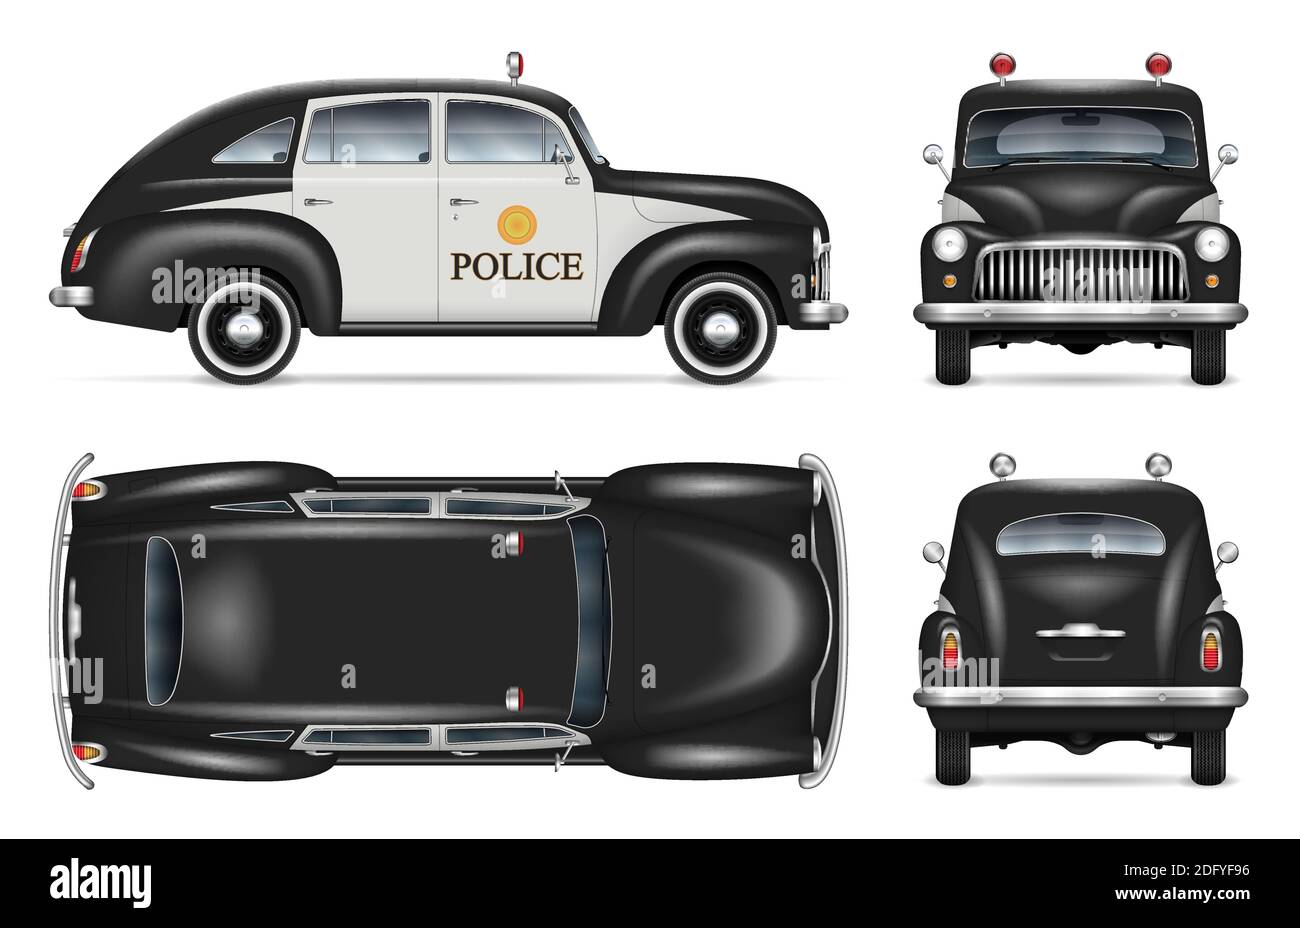 Maquette de véhicule de police vintage sur fond blanc, vue latérale, avant, arrière, haut. Tous les éléments des groupes sur des calques distincts pour faciliter l'édition Illustration de Vecteur